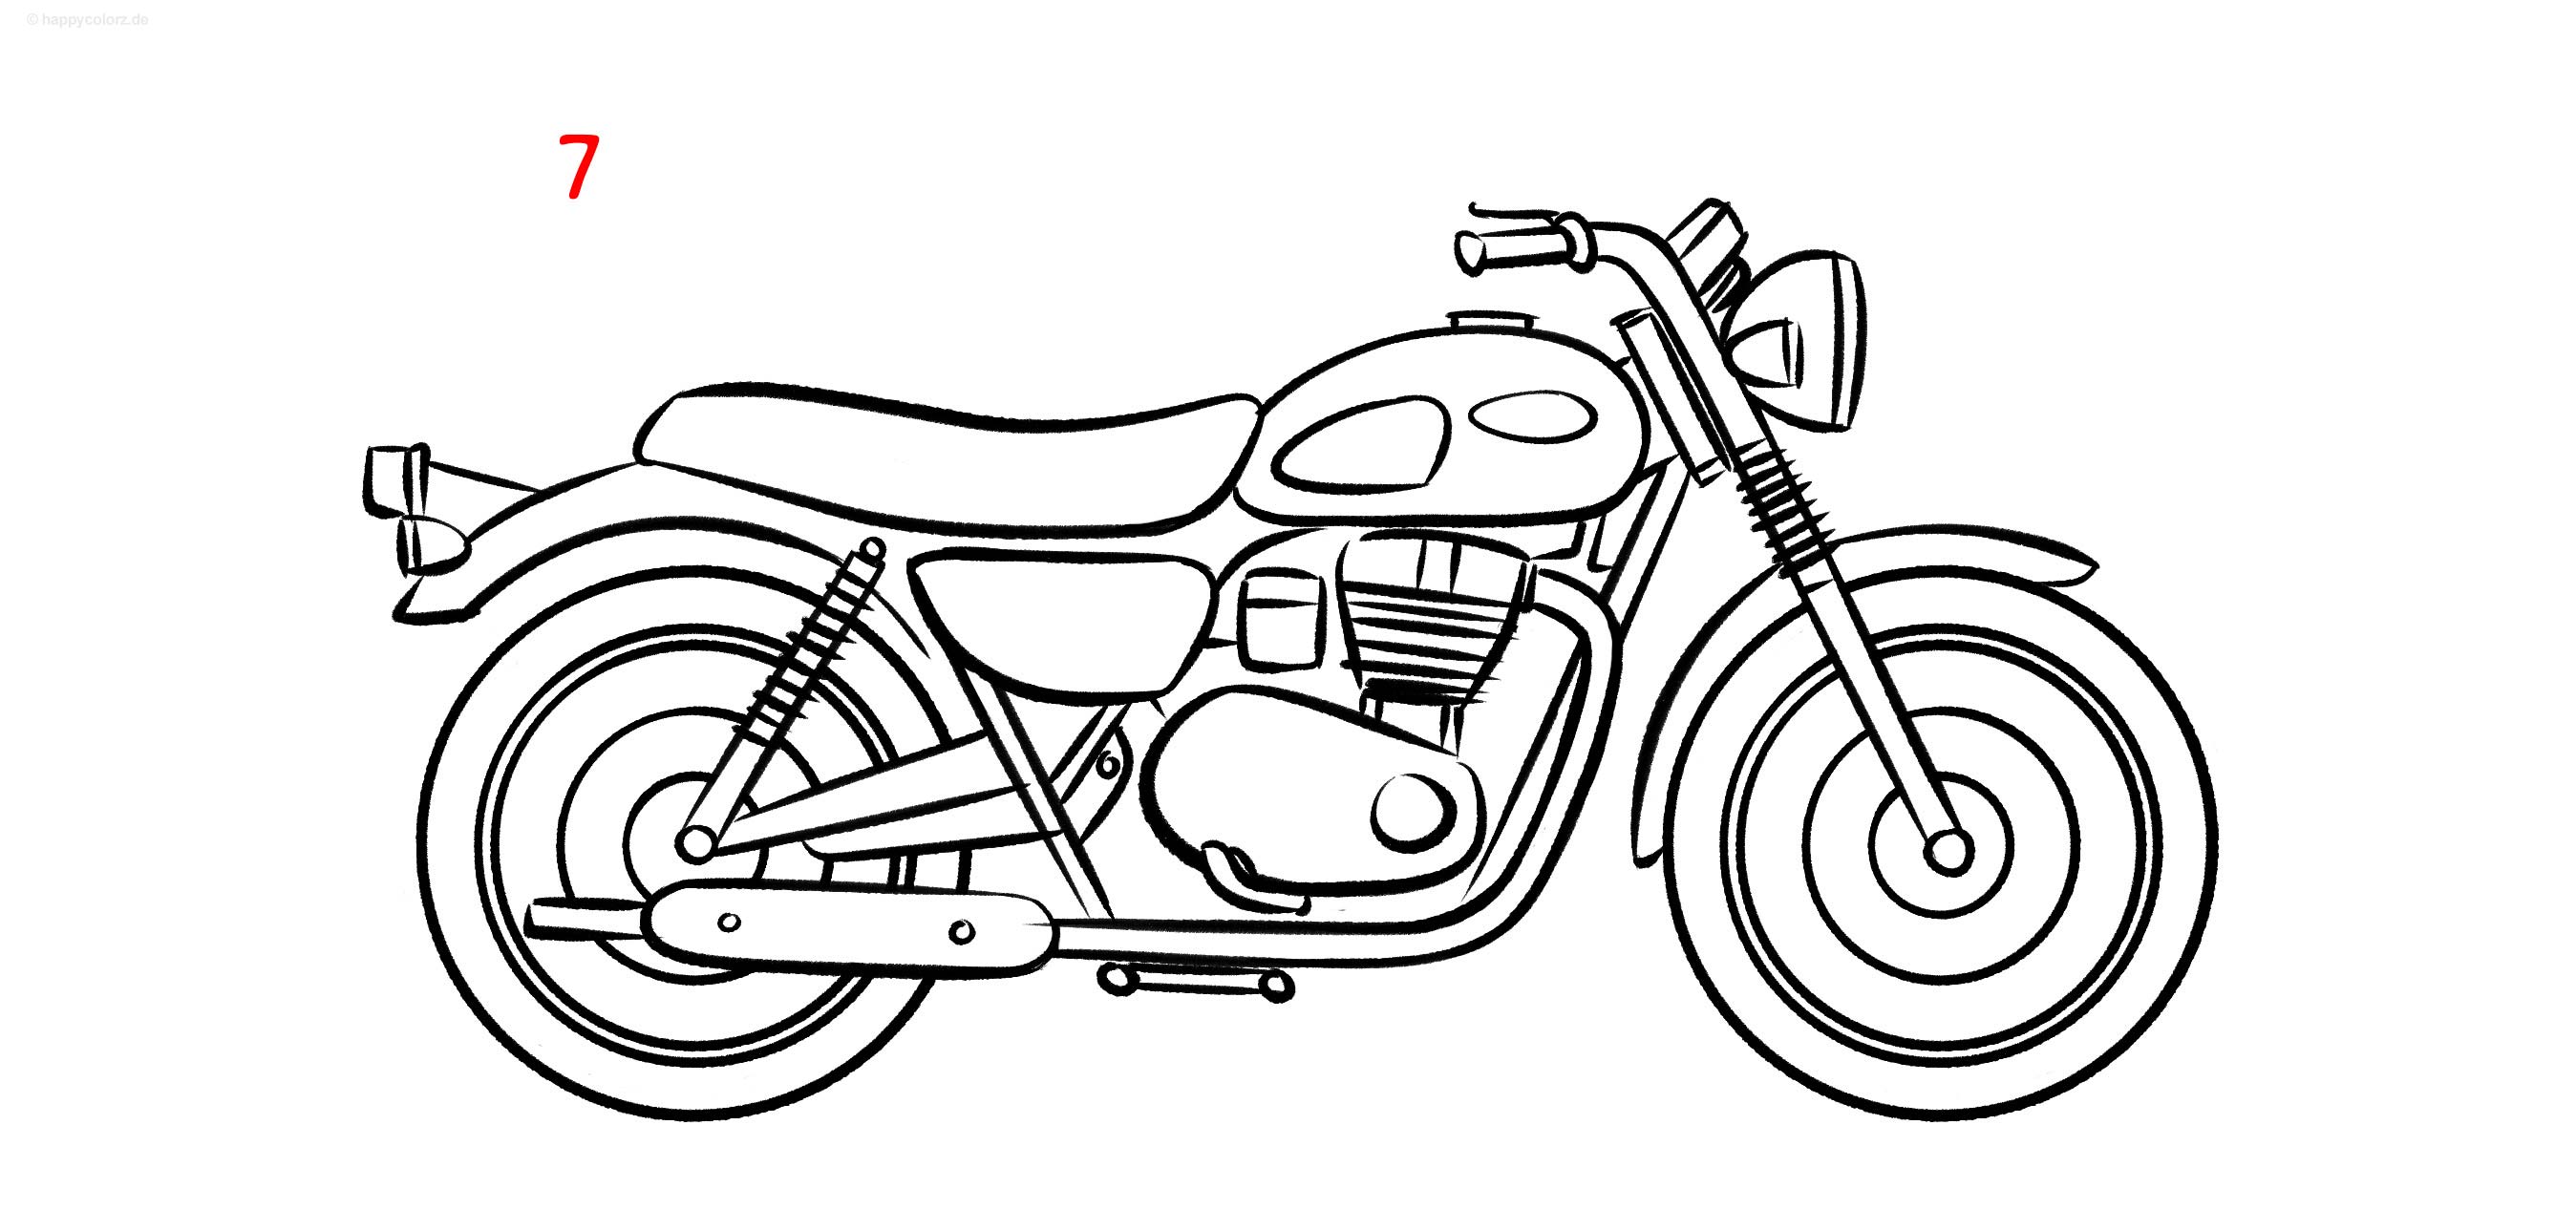 Anleitung: Motorrad zeichnen